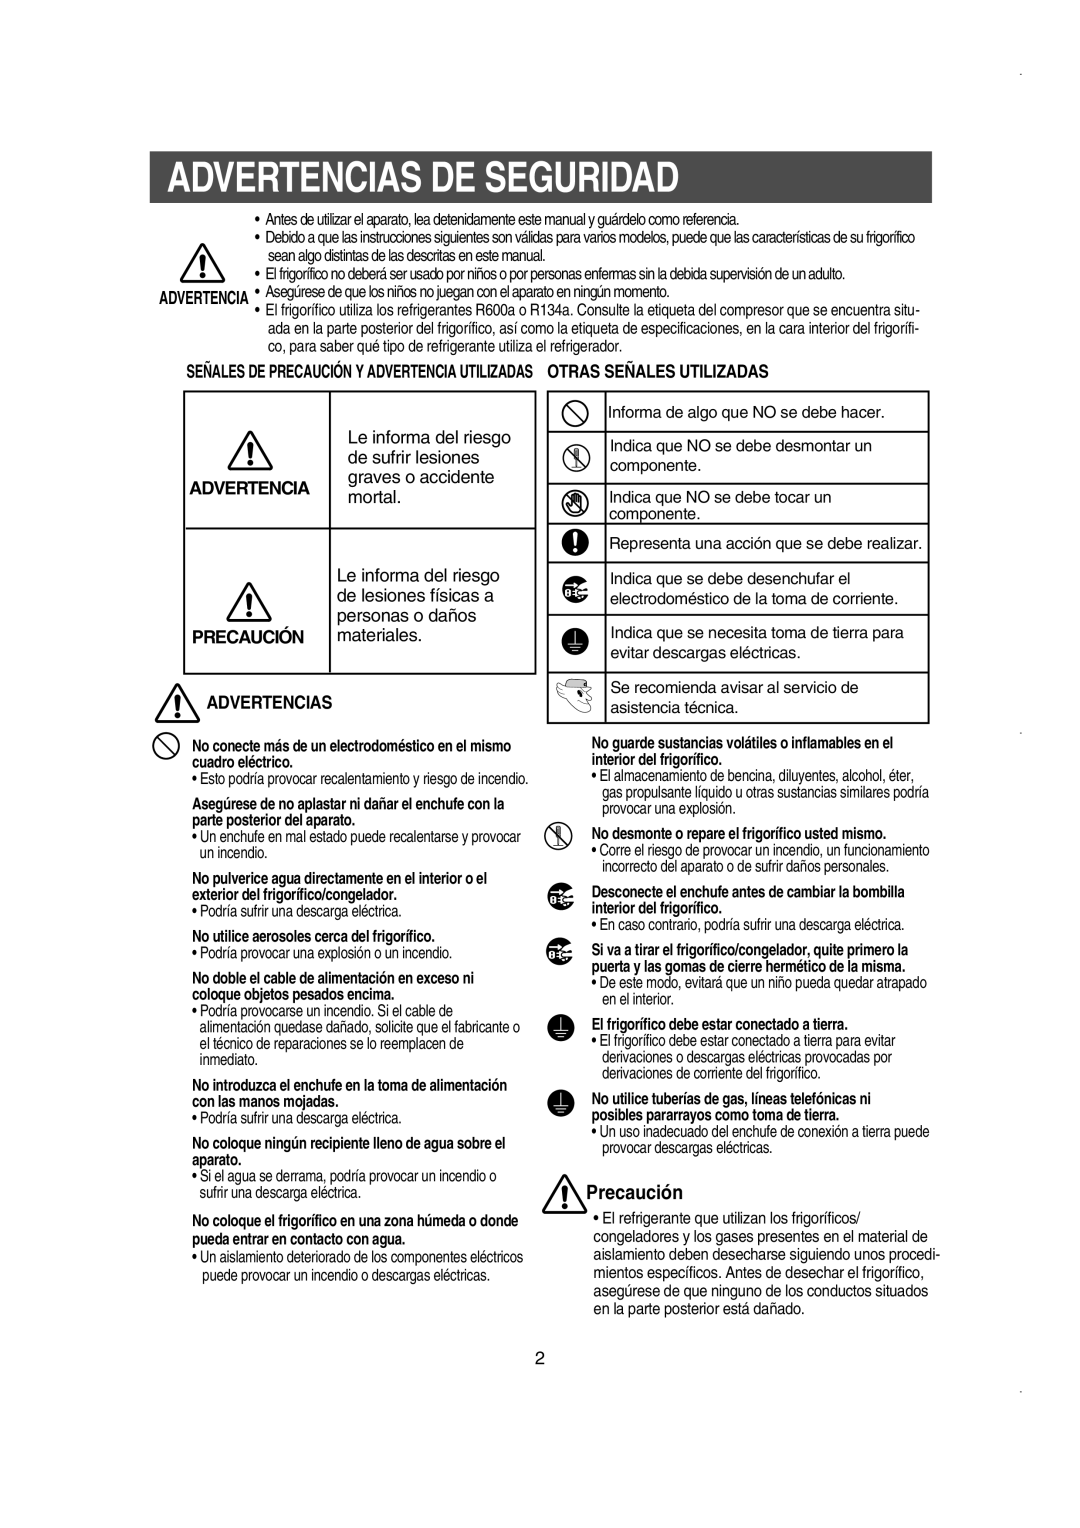 Samsung RS21WCSV1/XES, RS21FJSM1/XES, RS21NASW1/XES manual Advertencias De Seguridad, Precaución, PRECAUCIÓN materiales 